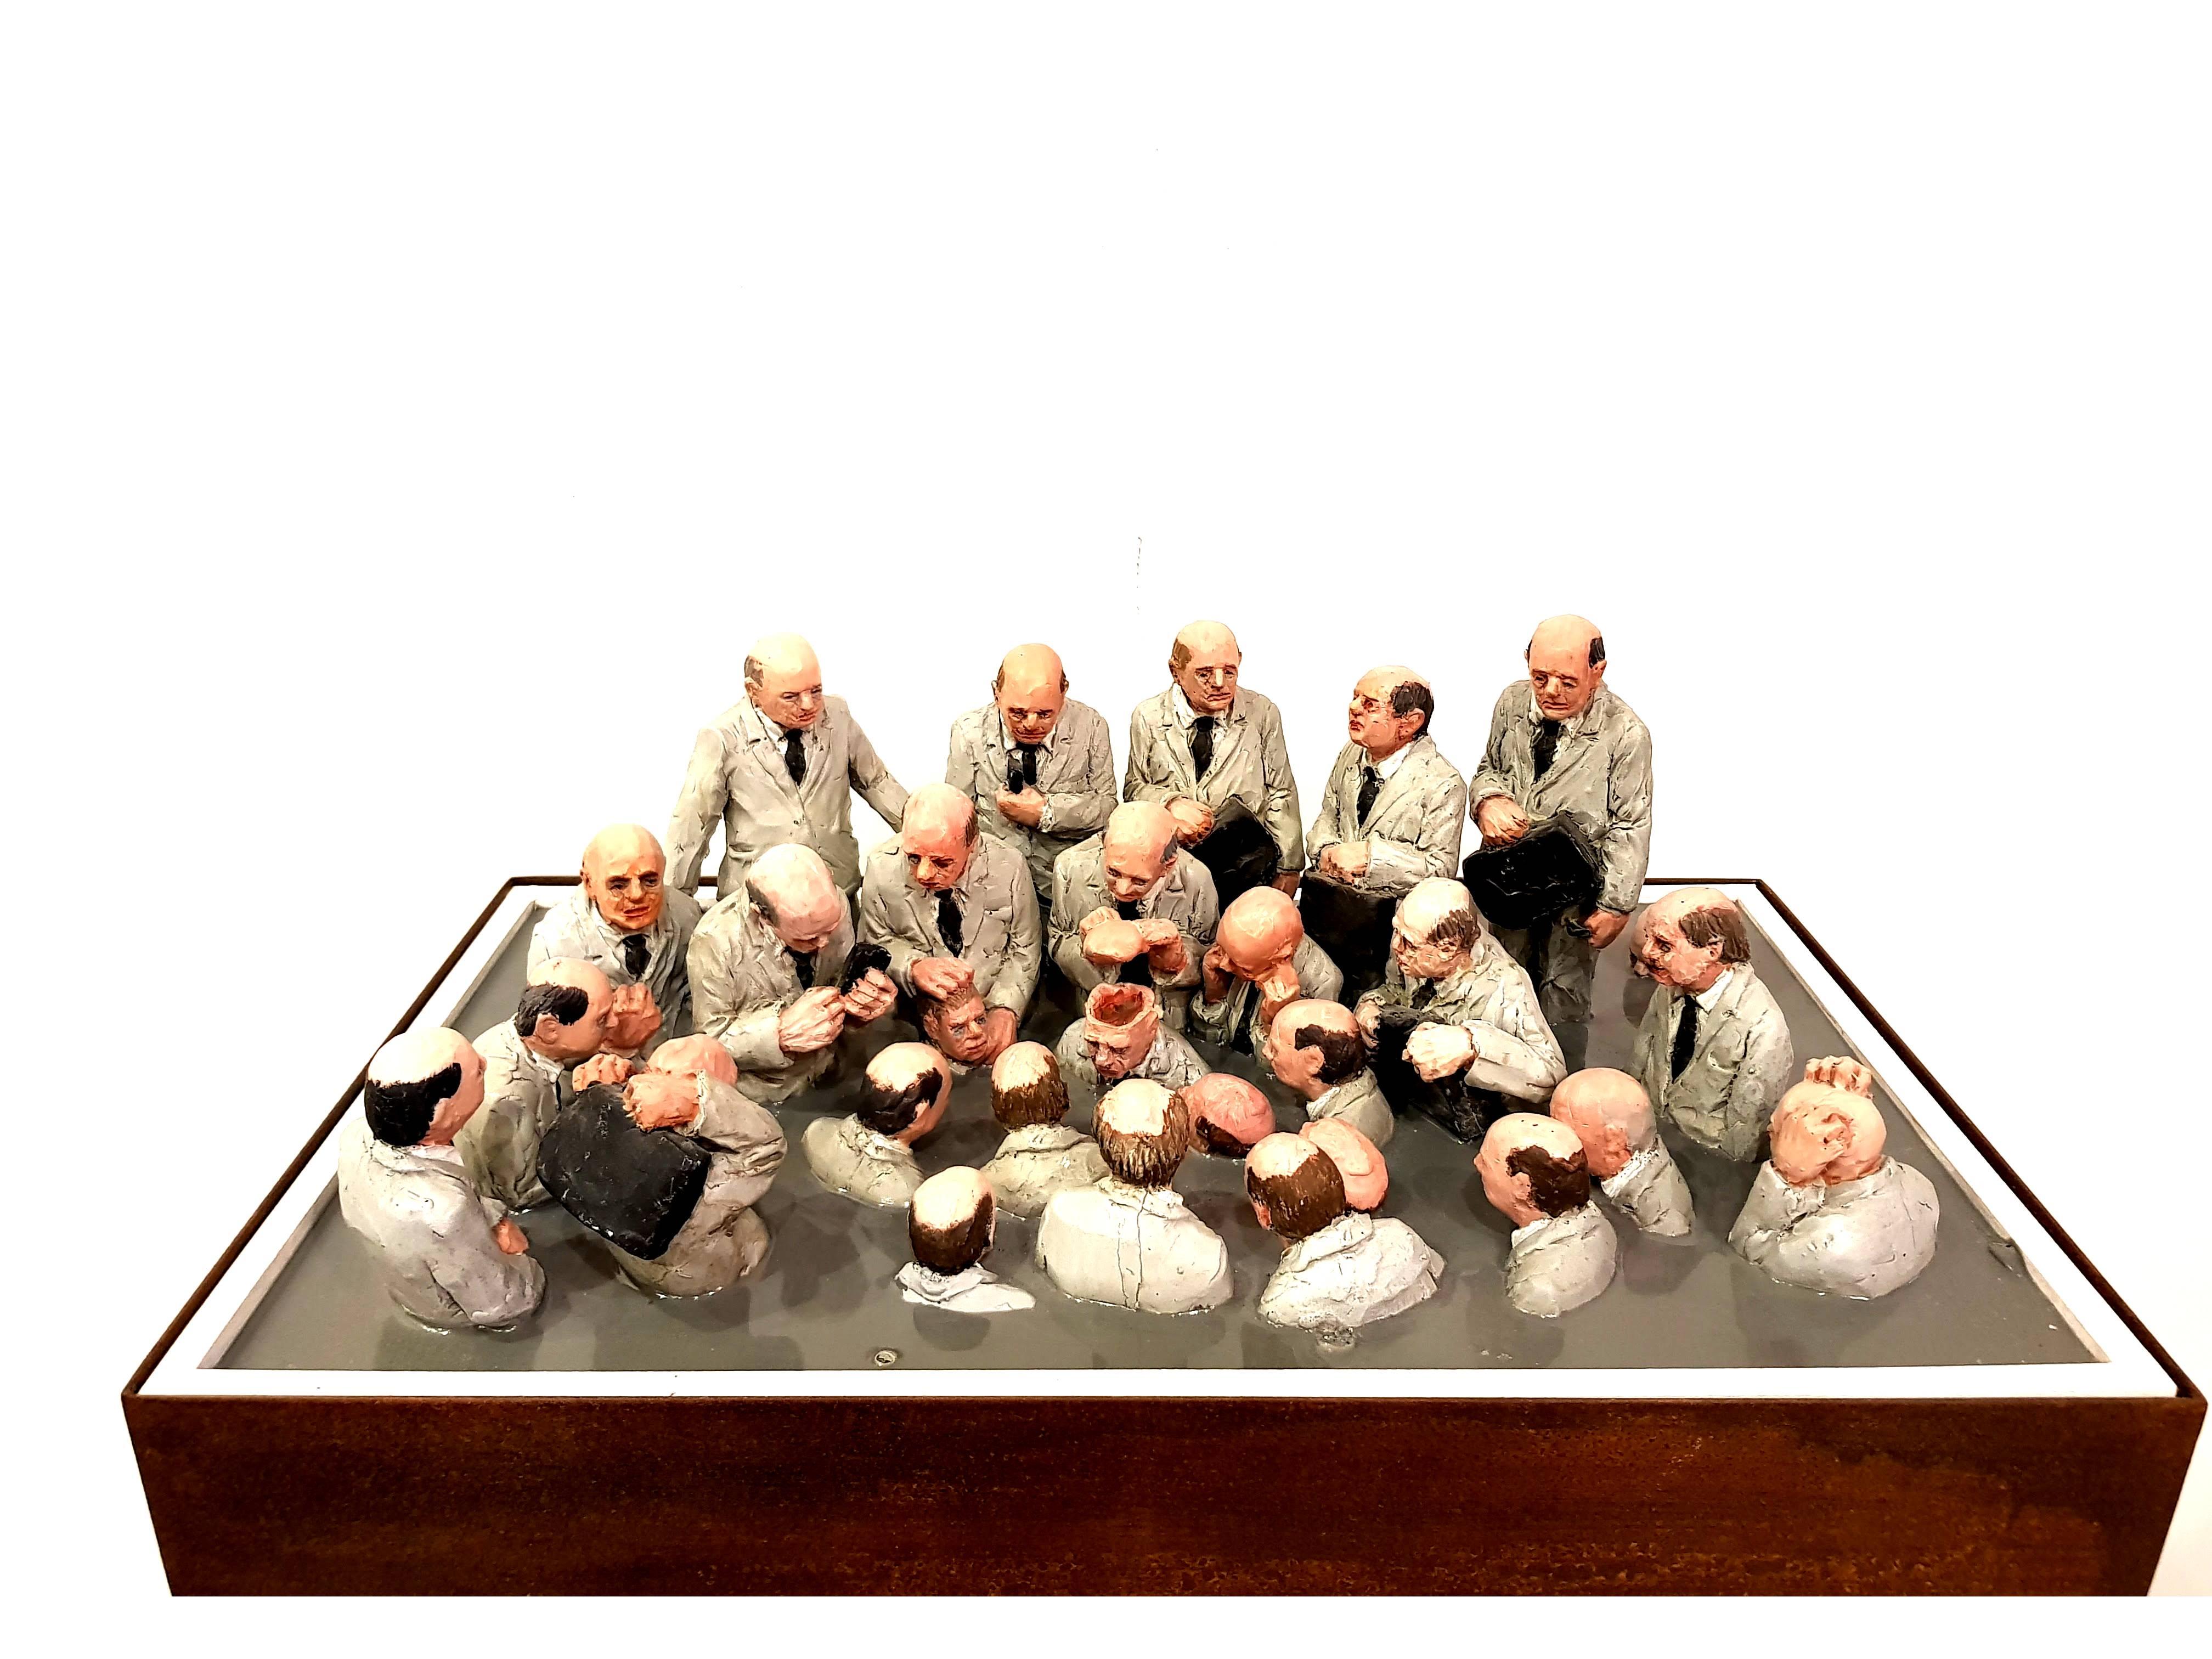 Isaak Cordal
Zement Eklipse
Einzigartige Resine-Skulptur.
Unterzeichnet
Abmessungen: 23 x 51 x 30 cm

Mit dem einfachen Akt der Miniaturisierung und der durchdachten Platzierung erweitert Isaac Cordal auf magische Weise die Vorstellungskraft der